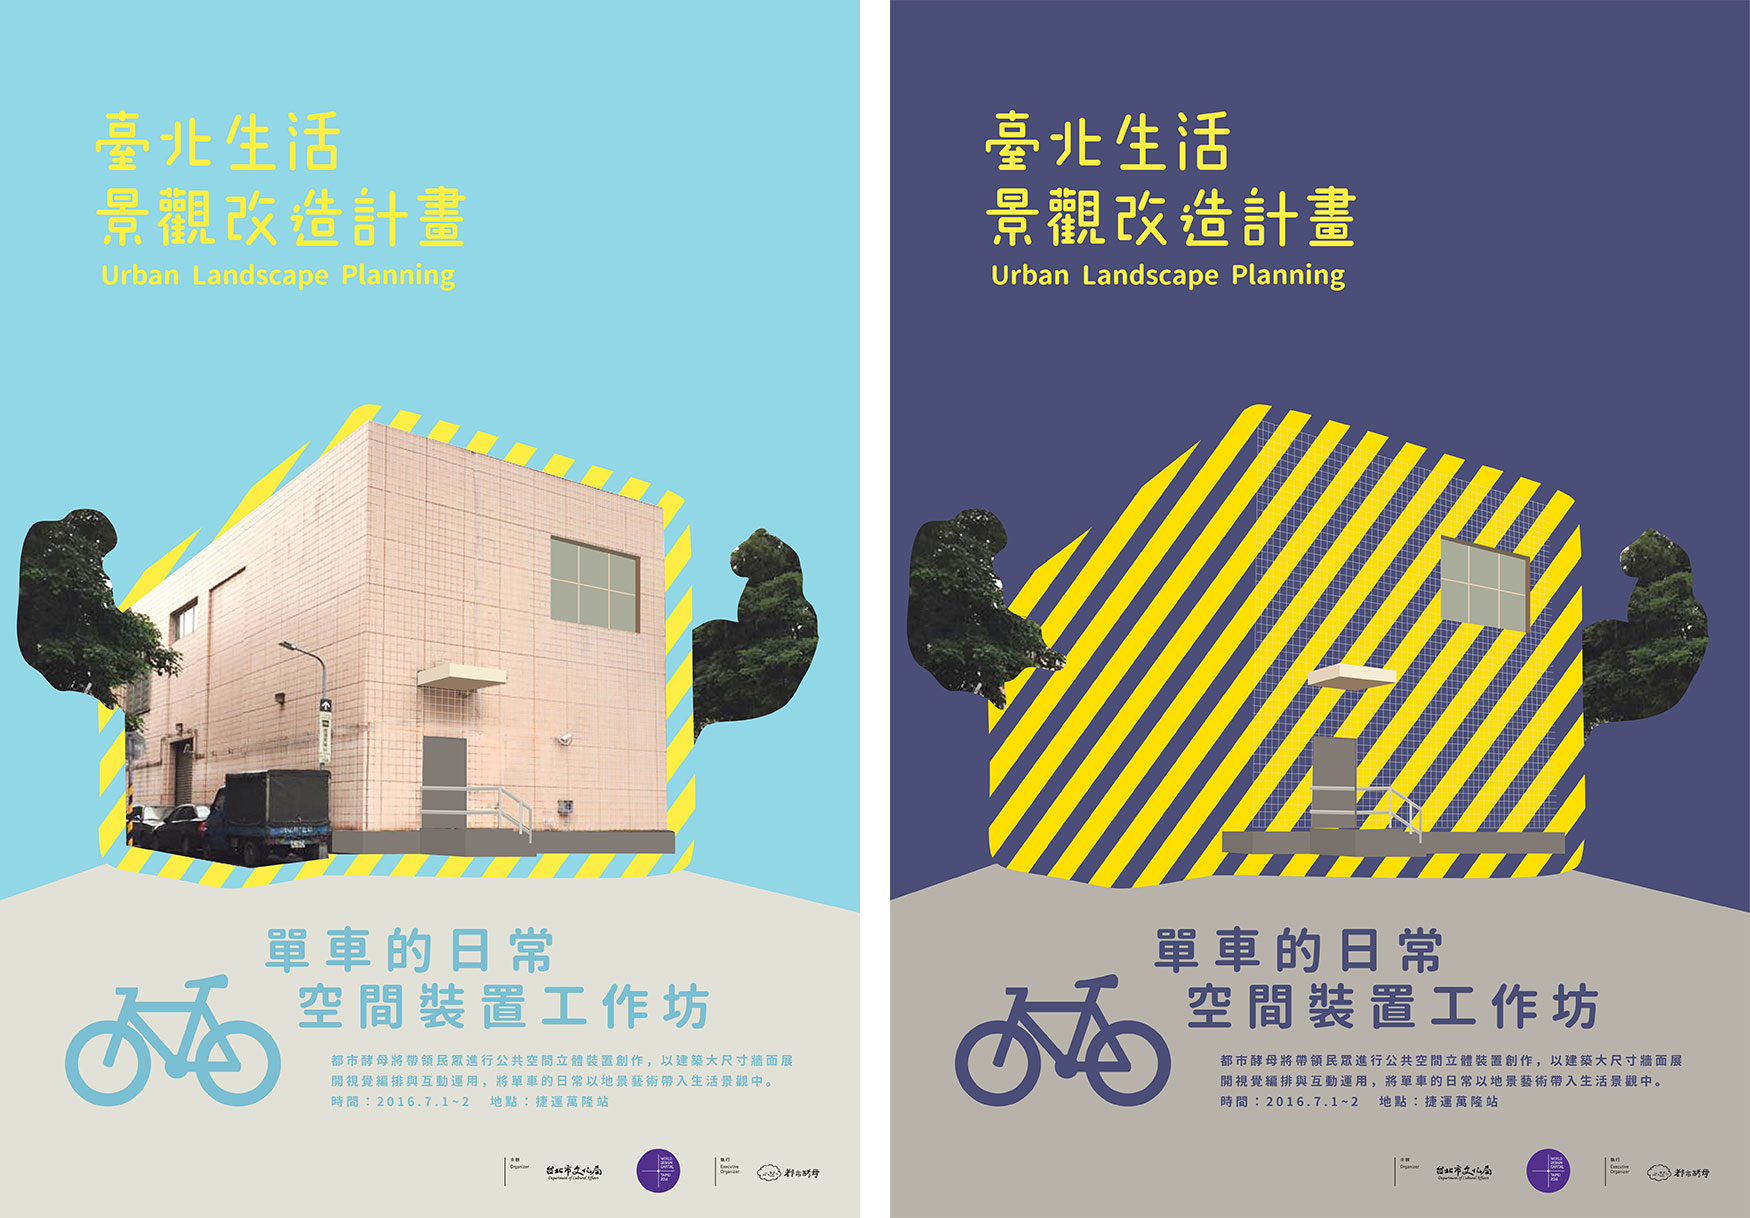 都市酵母, 水越設計, city yeast, AGUA Design,  Taipei, 台北, 臺北世界設計之都,  台北生活景觀改造計畫, 變電站, 自行車,  工作坊, 地景裝置, WDC